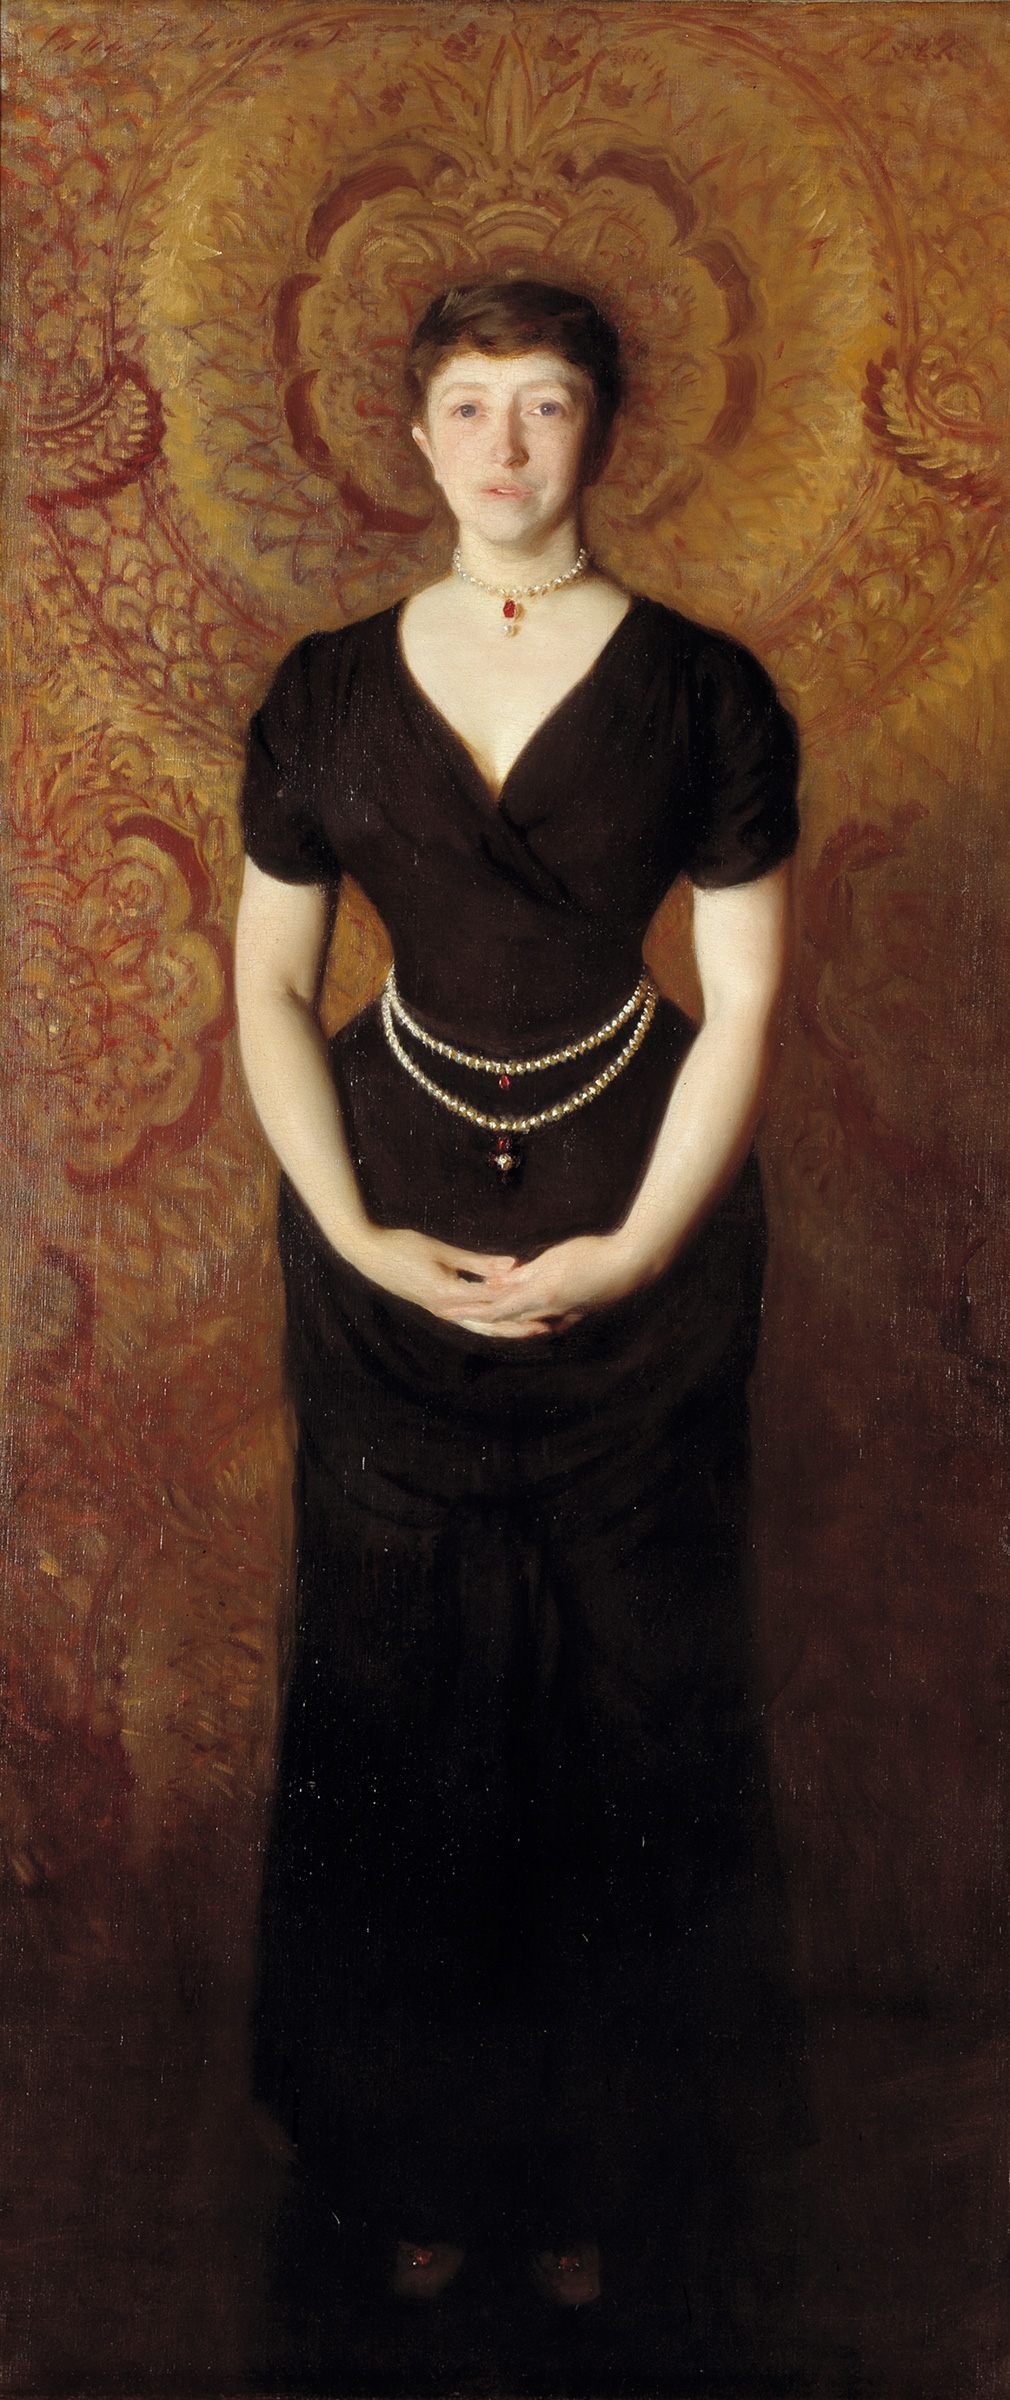 Portrait von Isabella Stewart Gardner by John Singer Sargent - 1888 - 190 x 80 cm Isabella Stewart Gardner Museum